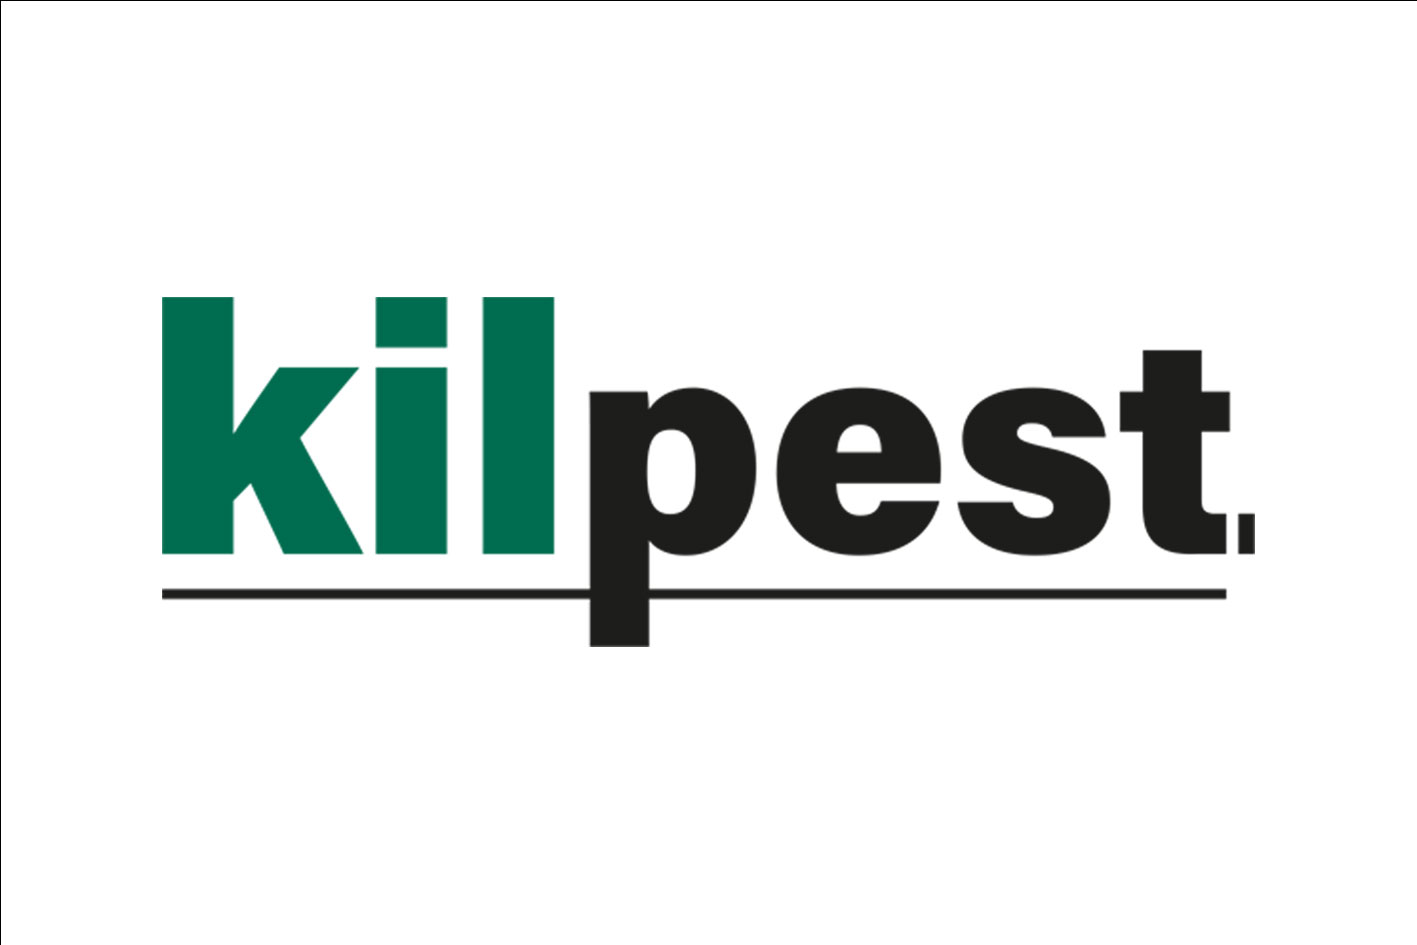 Kilpest, expert antinuisibles. Logo typographique en couleurs noir et vert